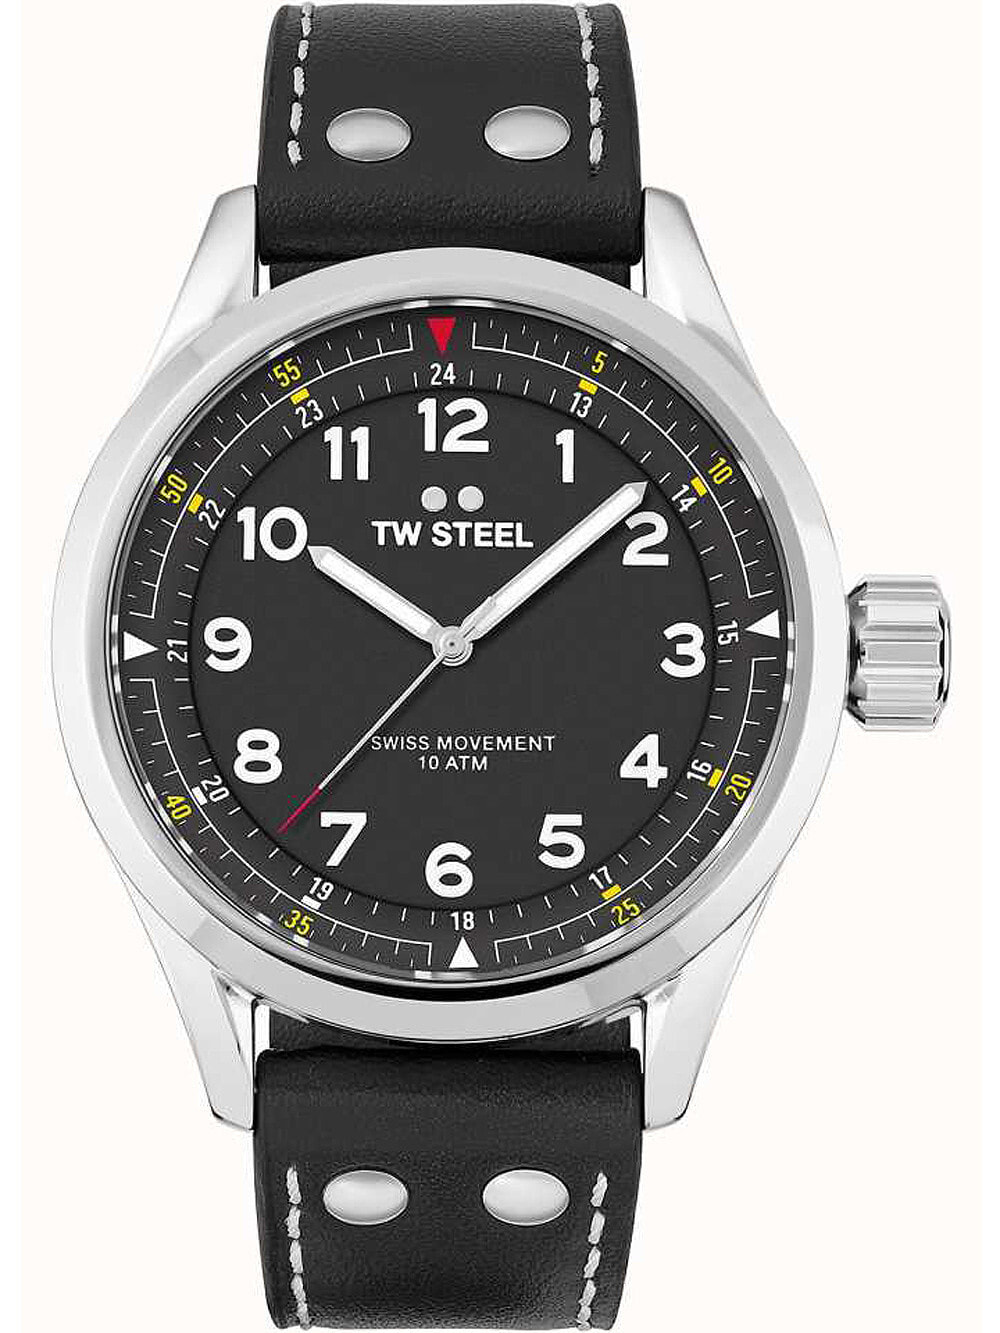 Мужские наручные часы с черным кожаным ремешком TW-Steel SVS103 Volante mens 45mm 10ATM